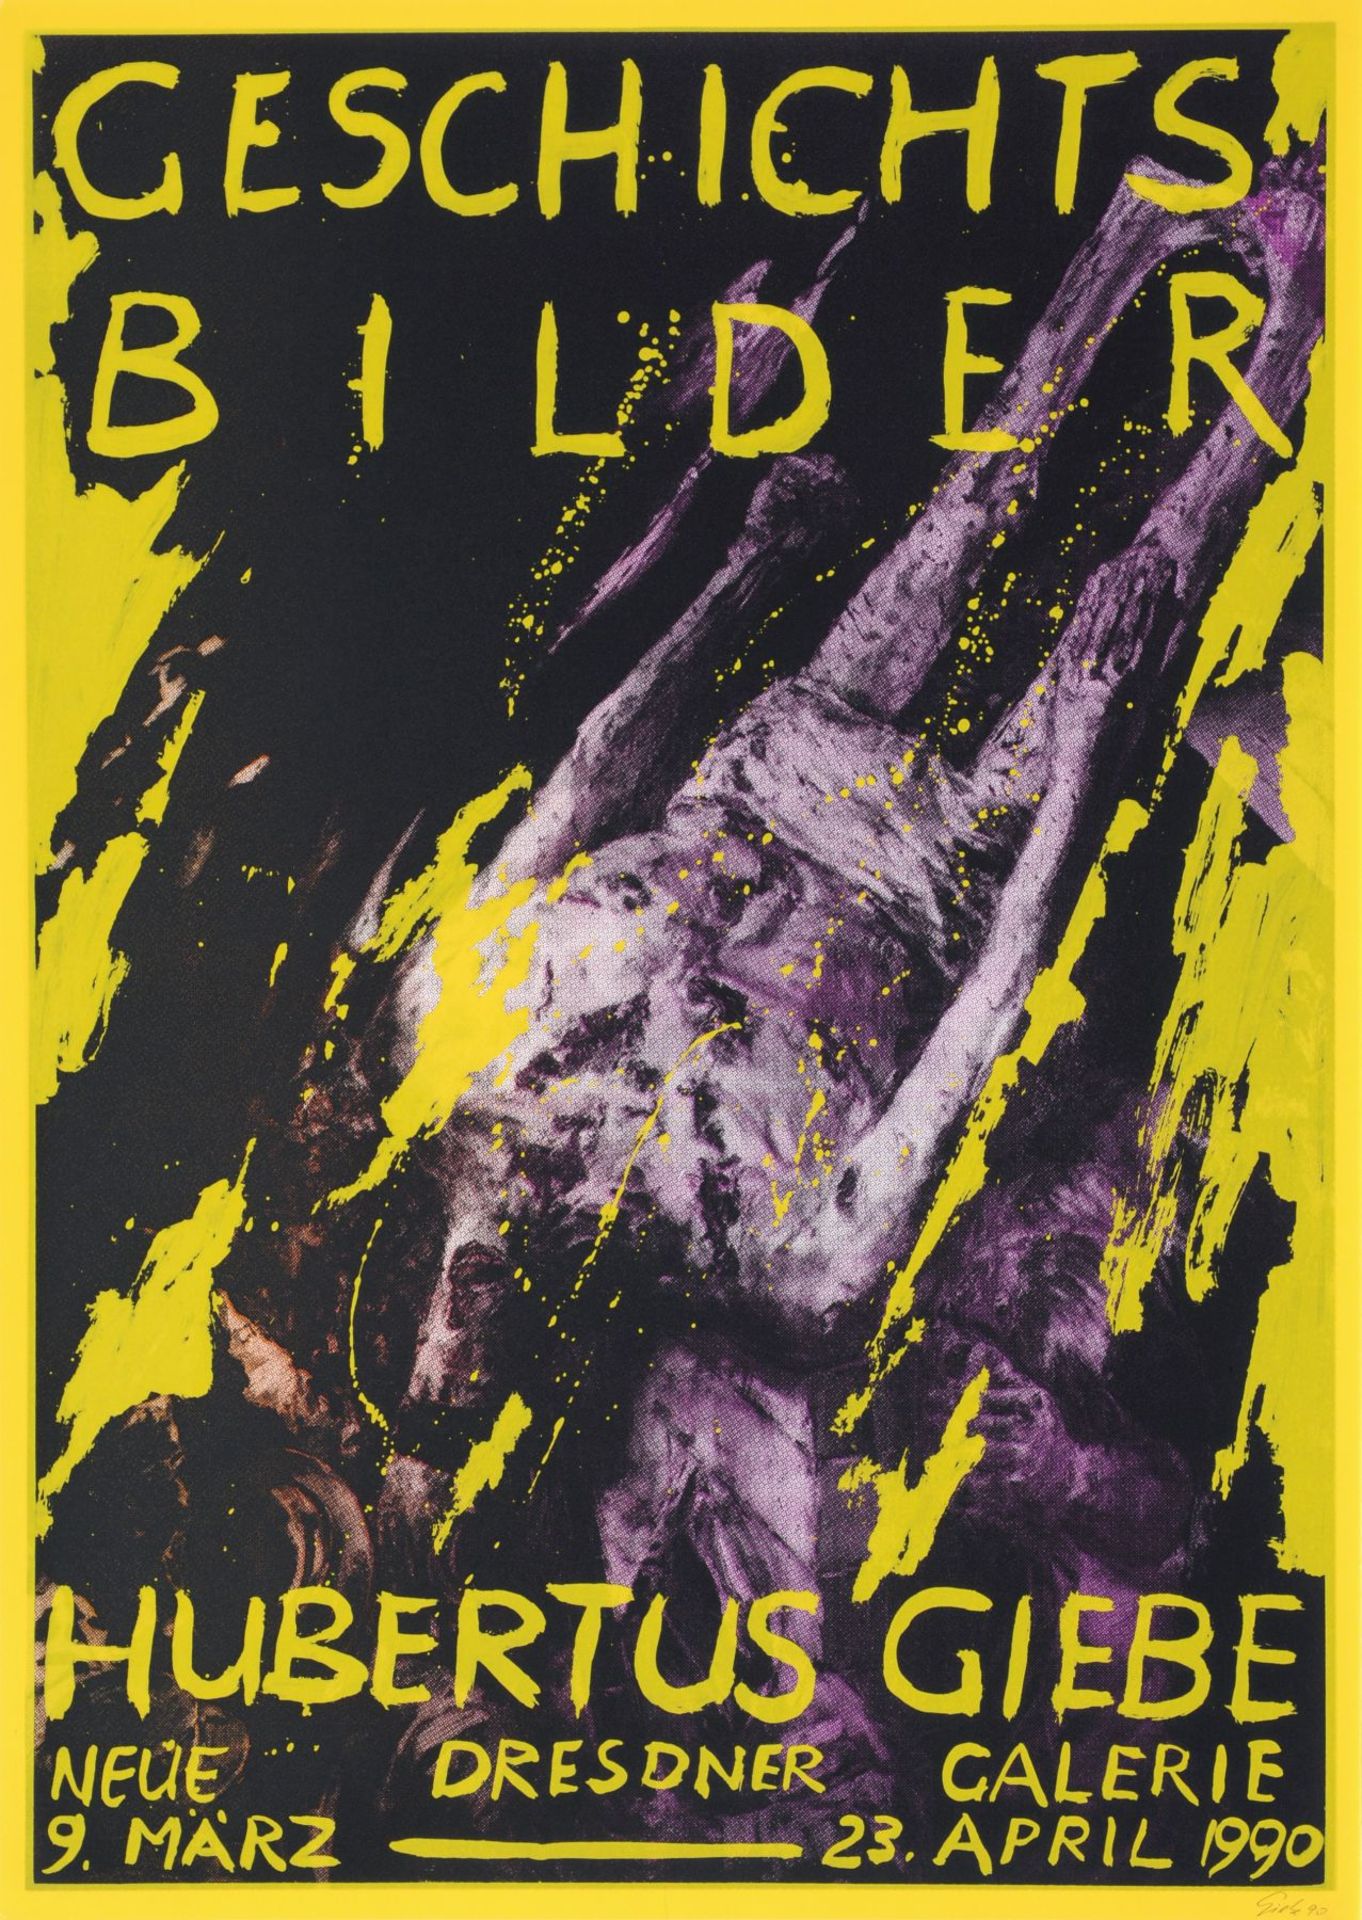 Hubertus Giebe "10 Jahre Galerie Mitte"/"Geschichtsbilder". 1989/1990. Hubertus Giebe 1953